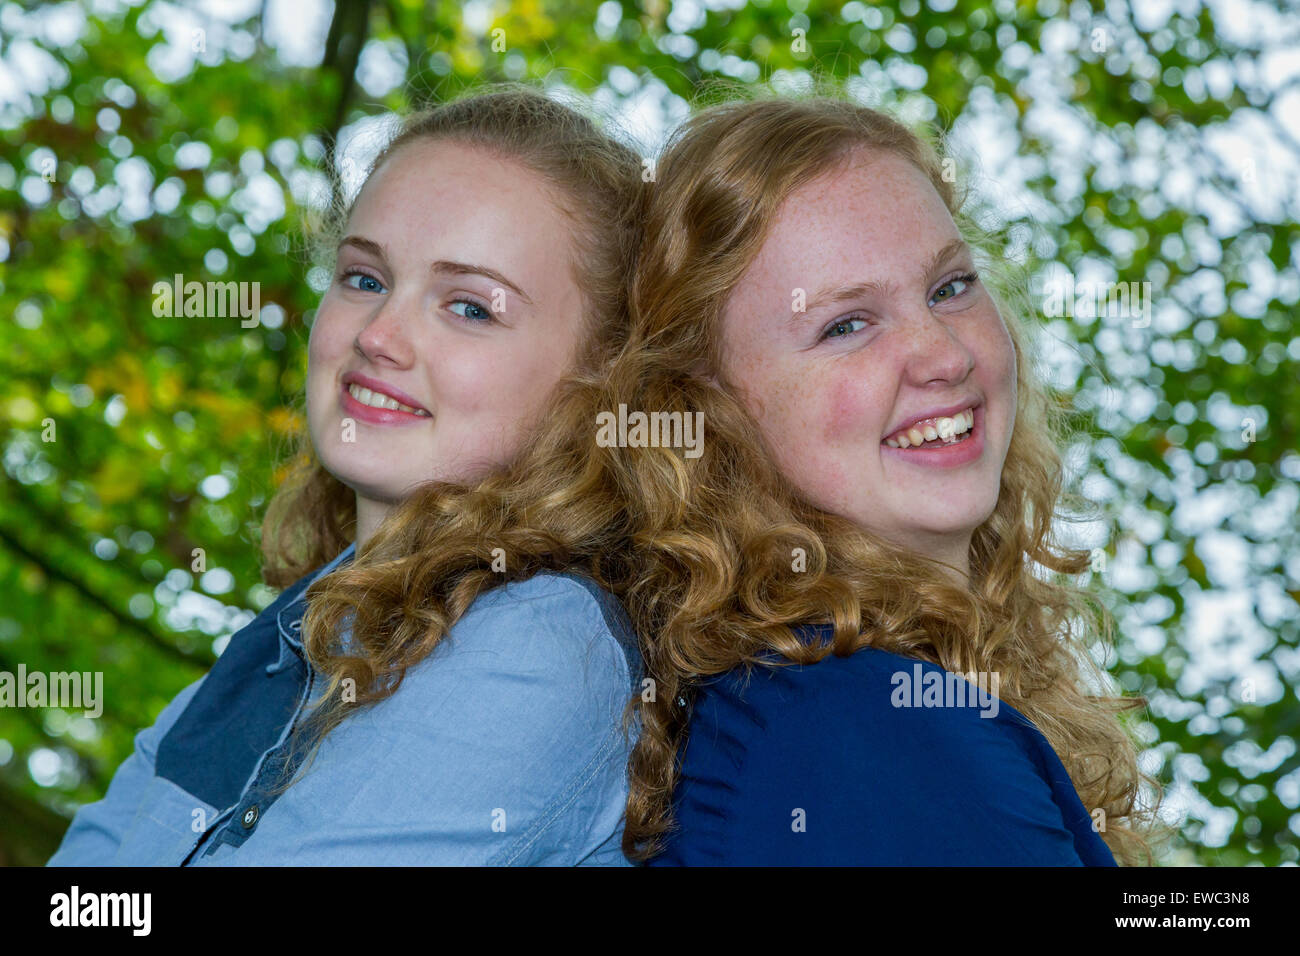 Deux sœurs shadow of chefs ensemble rire en vertu de l'arbre vert Banque D'Images